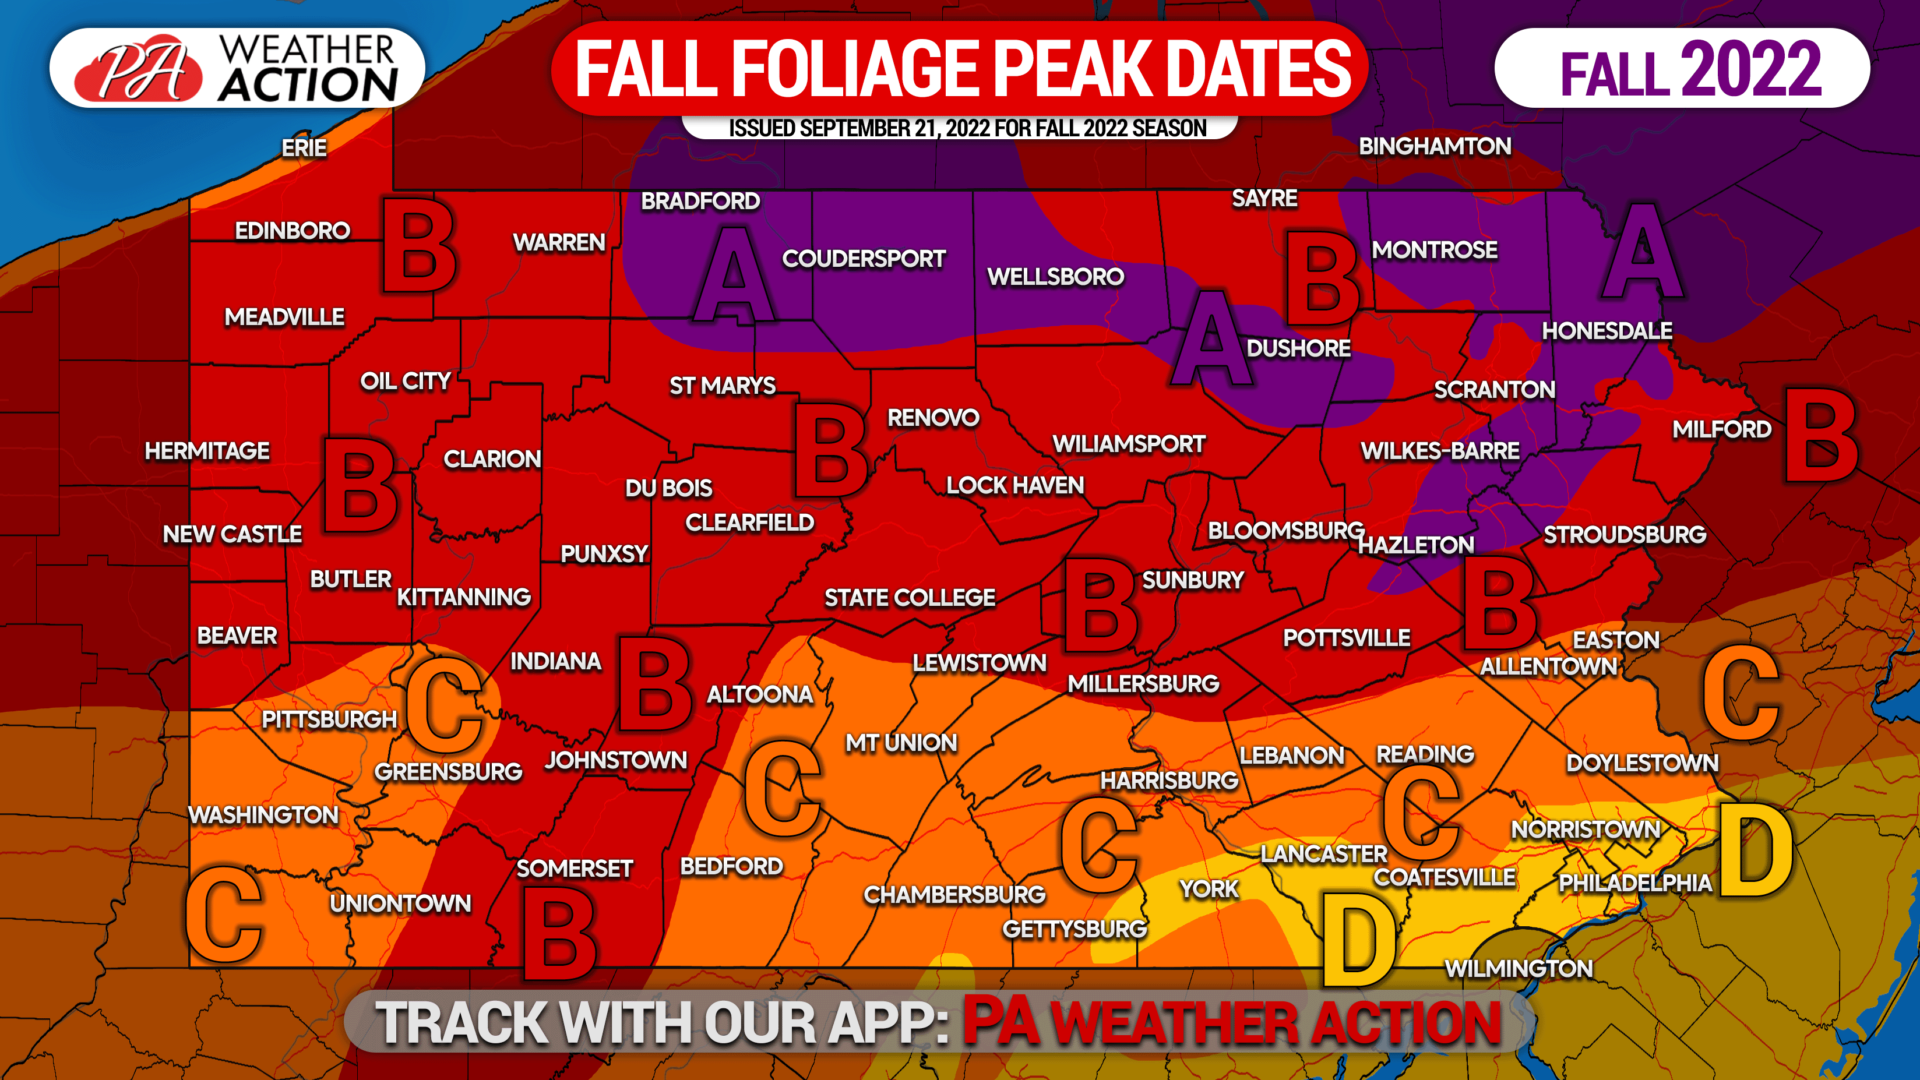 2022 Fall Foliage Peak Dates Forecast